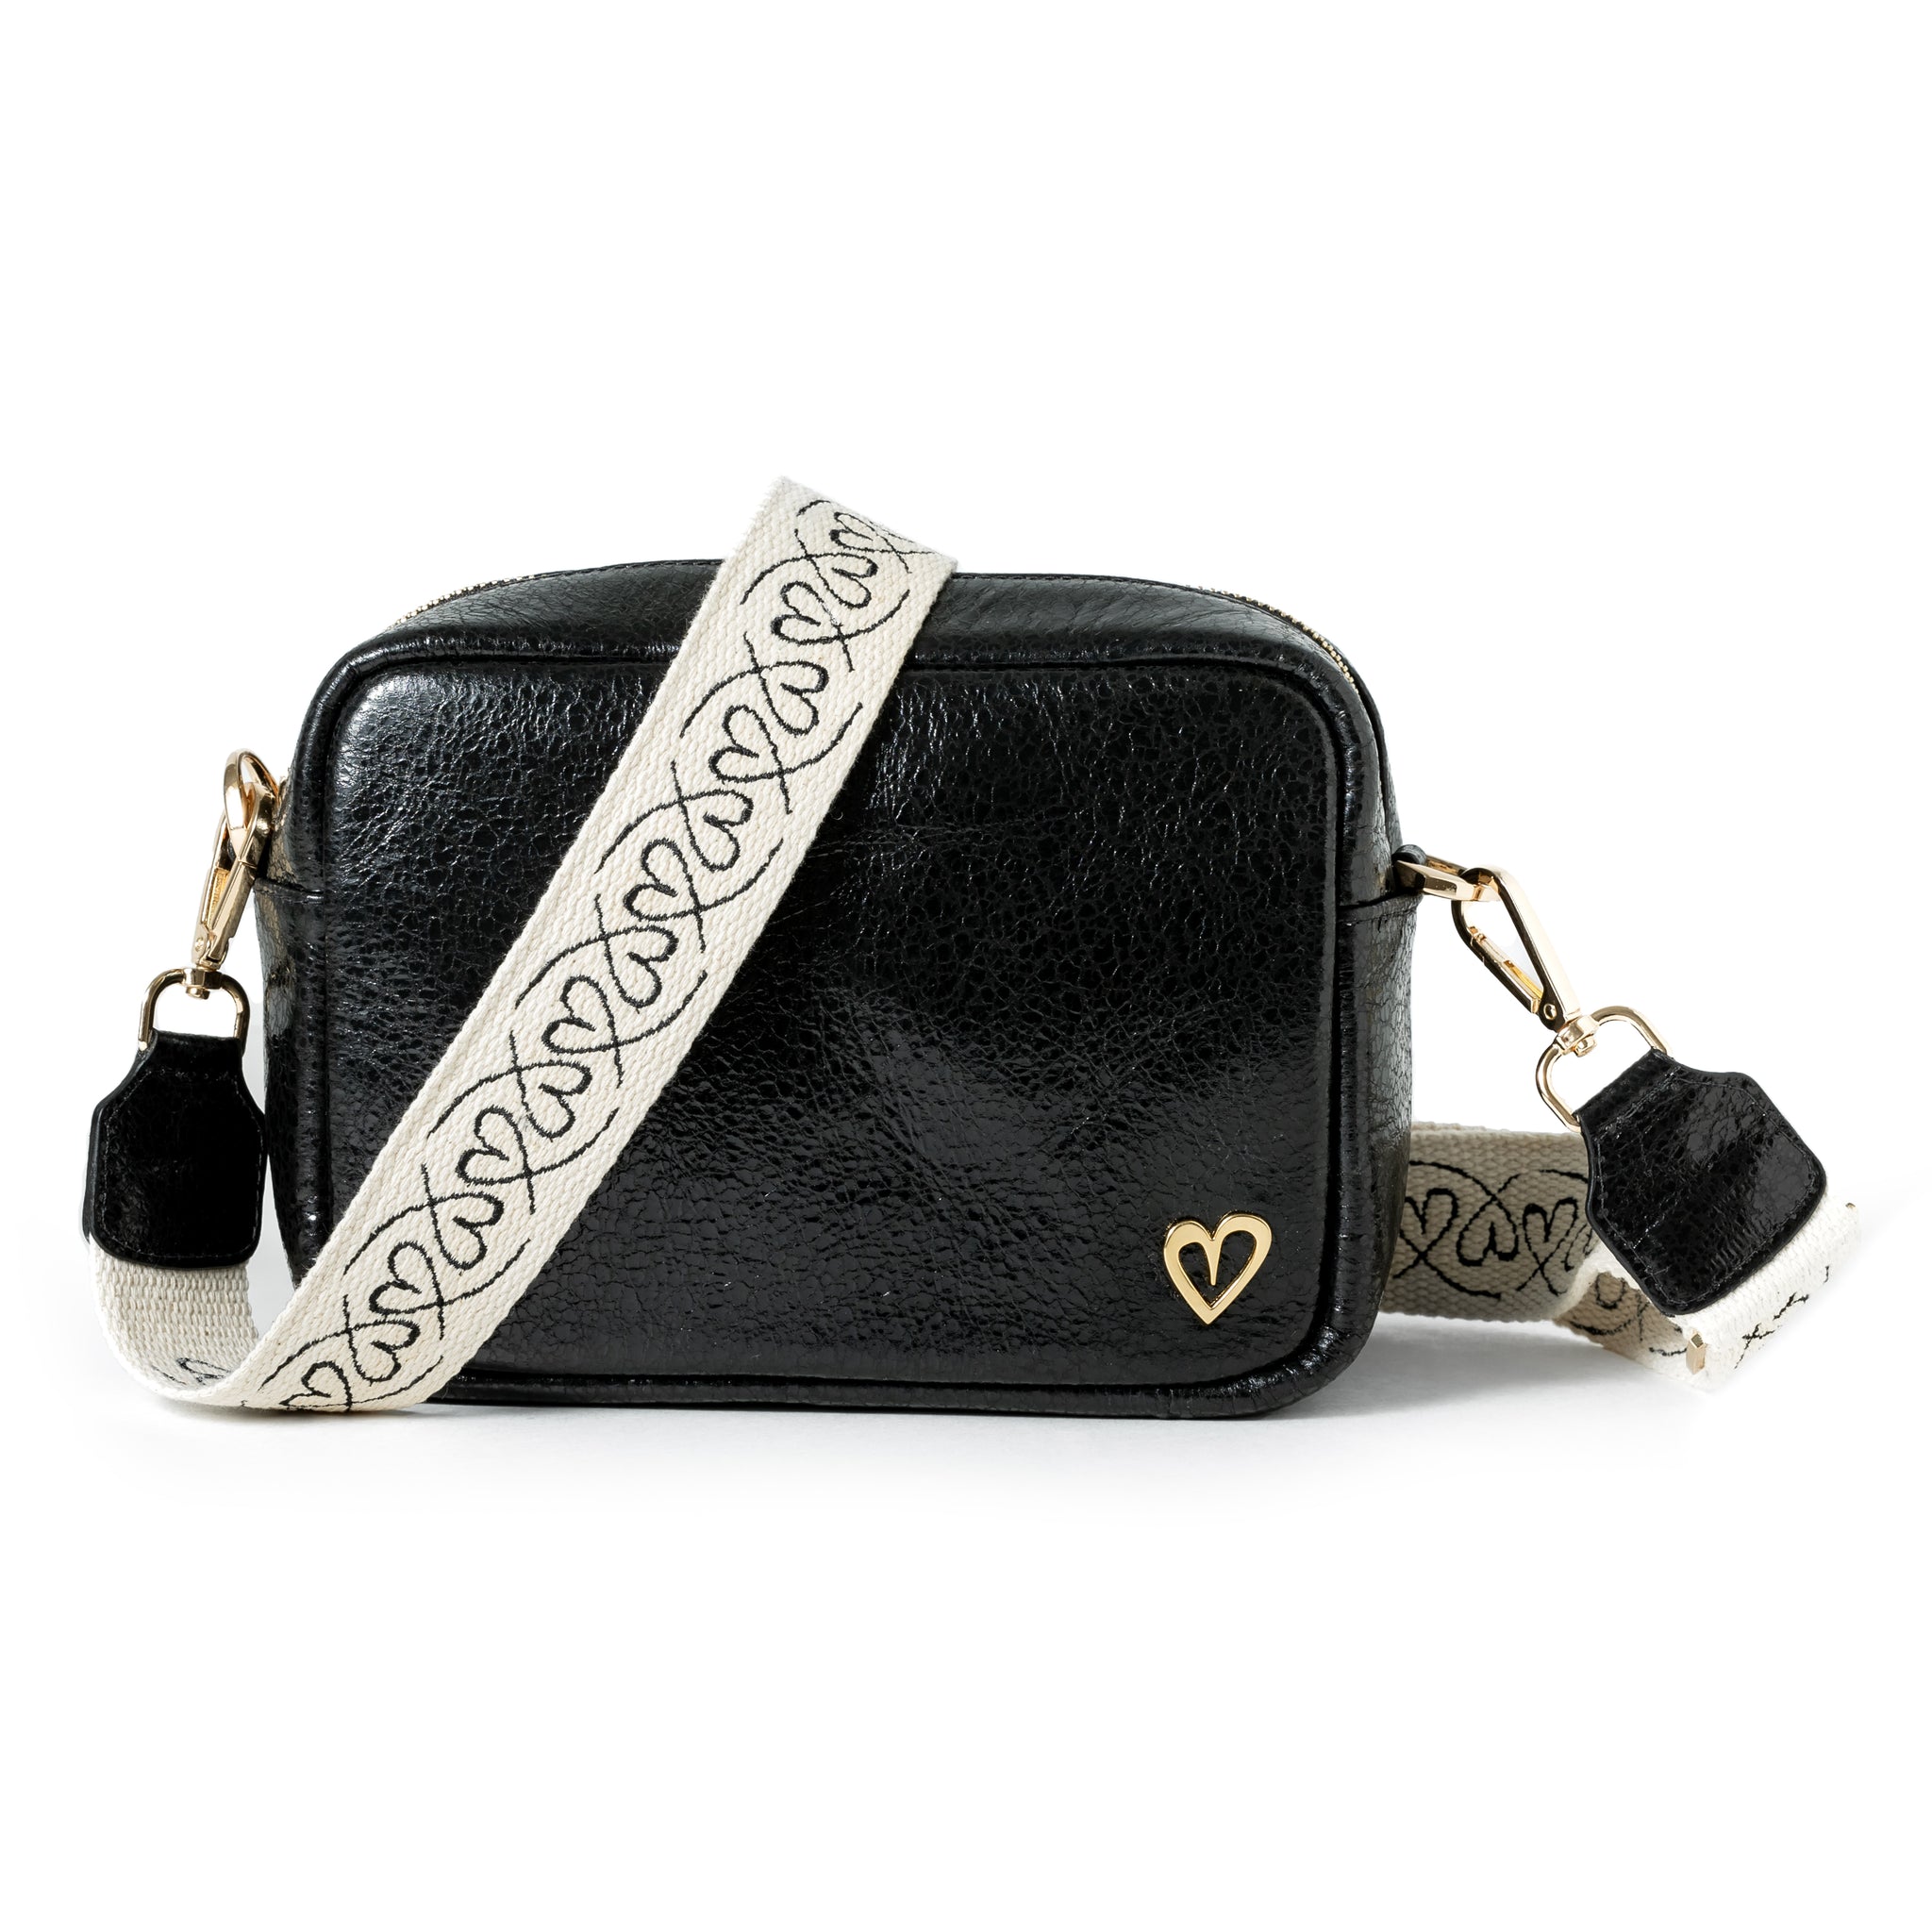 Carlotha Dual Bag - Black by Nataly Mendez, Genuine Leather Adjustable 25 CM x 20 CM x 10 CM Gold Heart Incluye strap corto de mano y strap largo